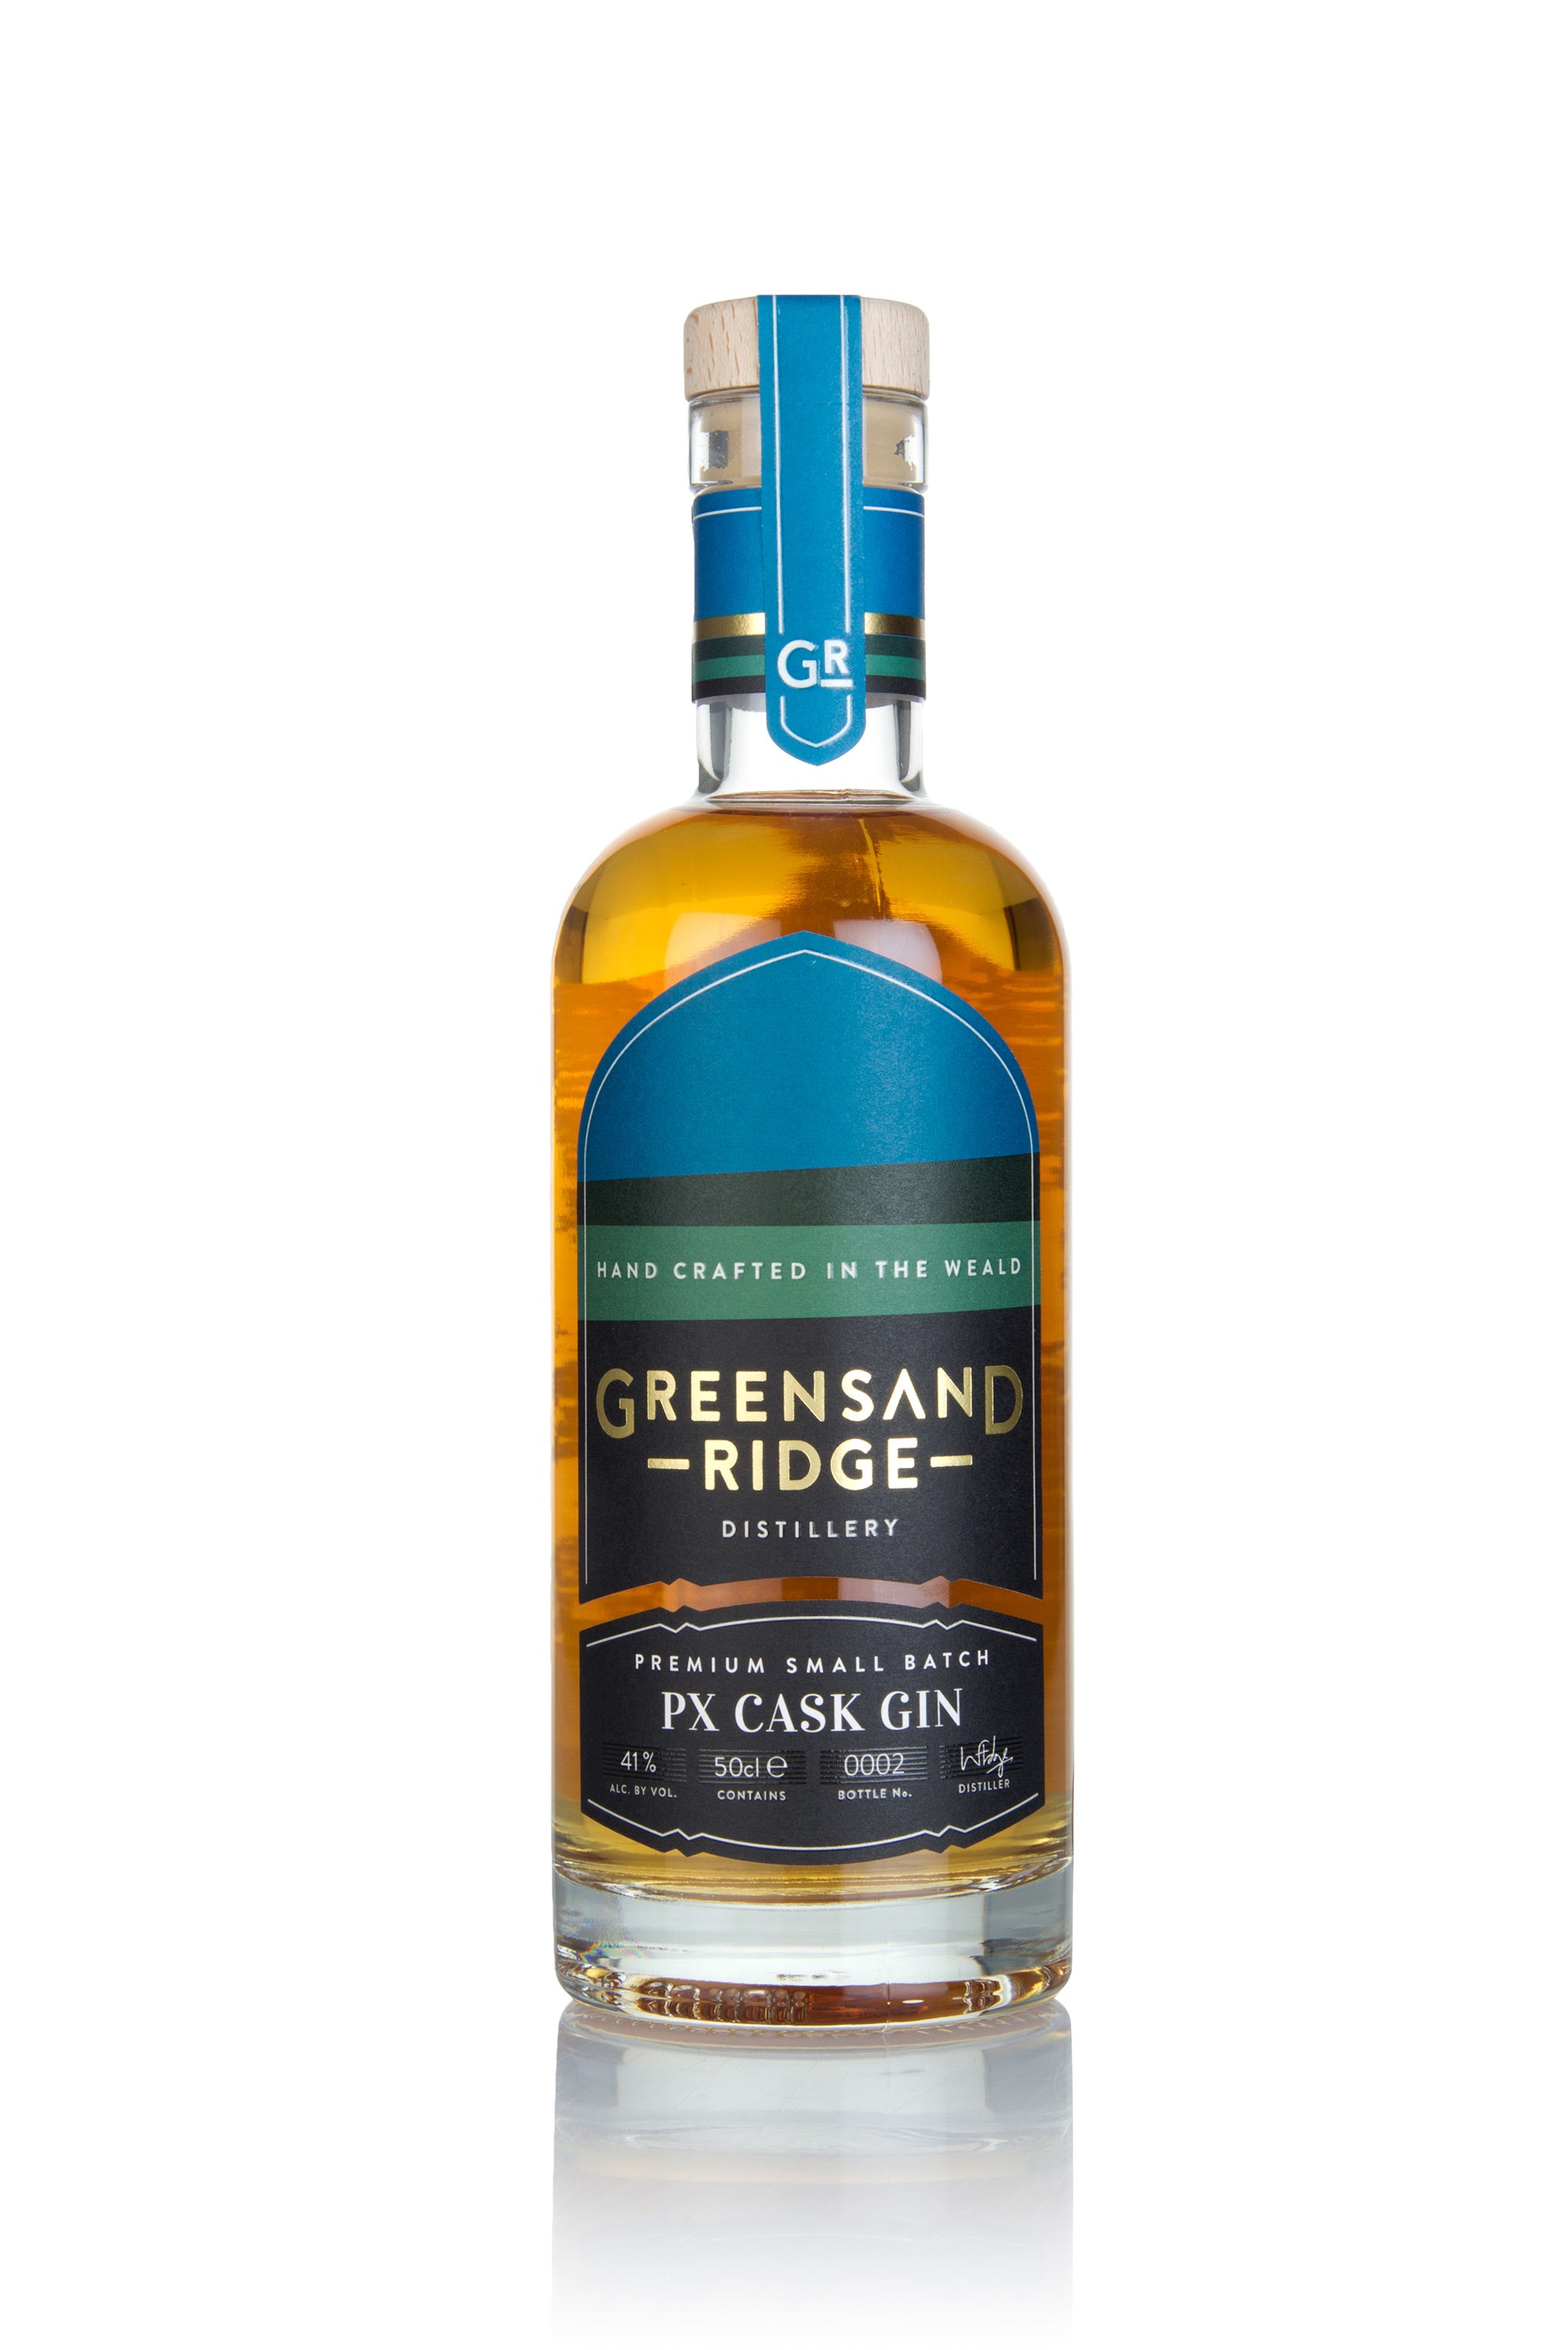 Greensand Ridge PX Cask Gin